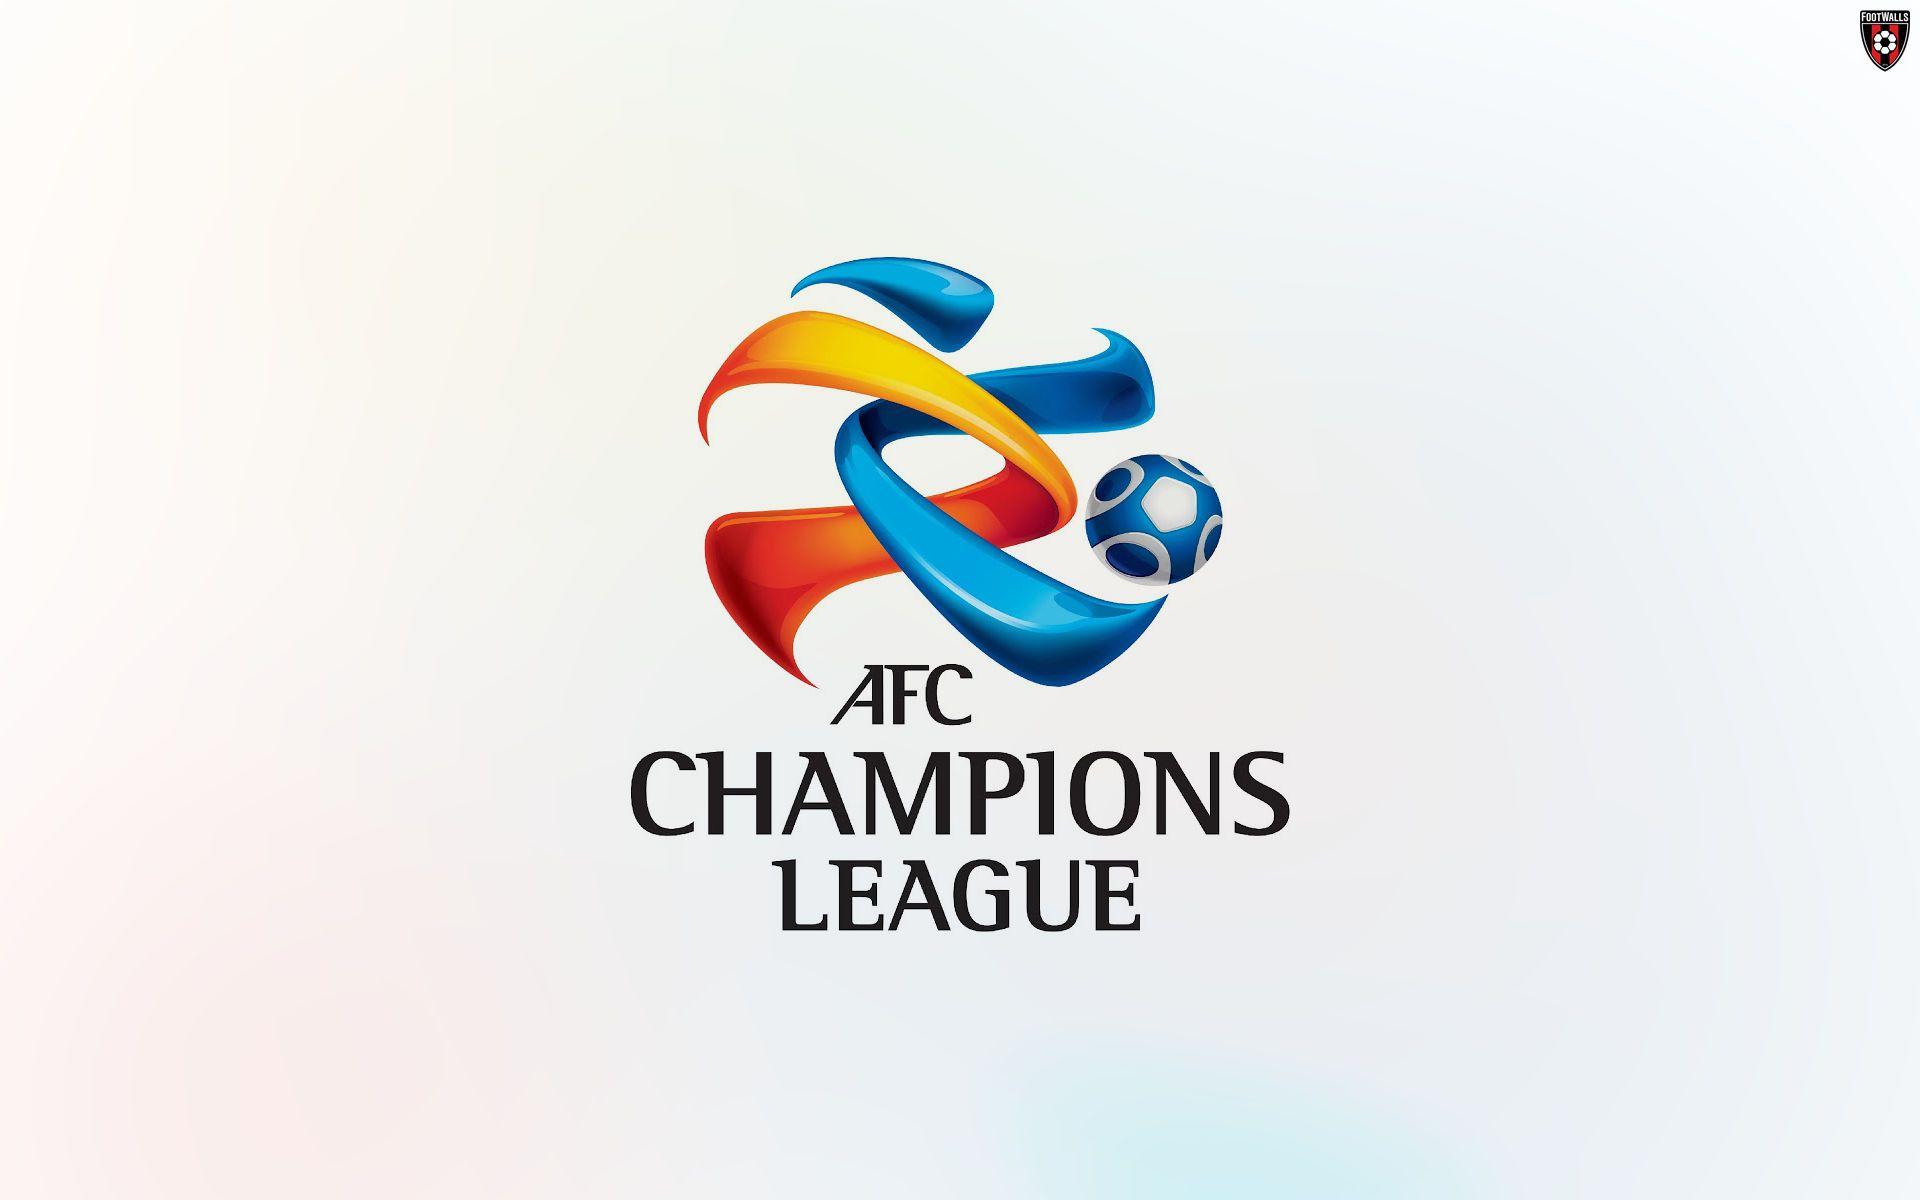 A F C Champions League Wallpaper